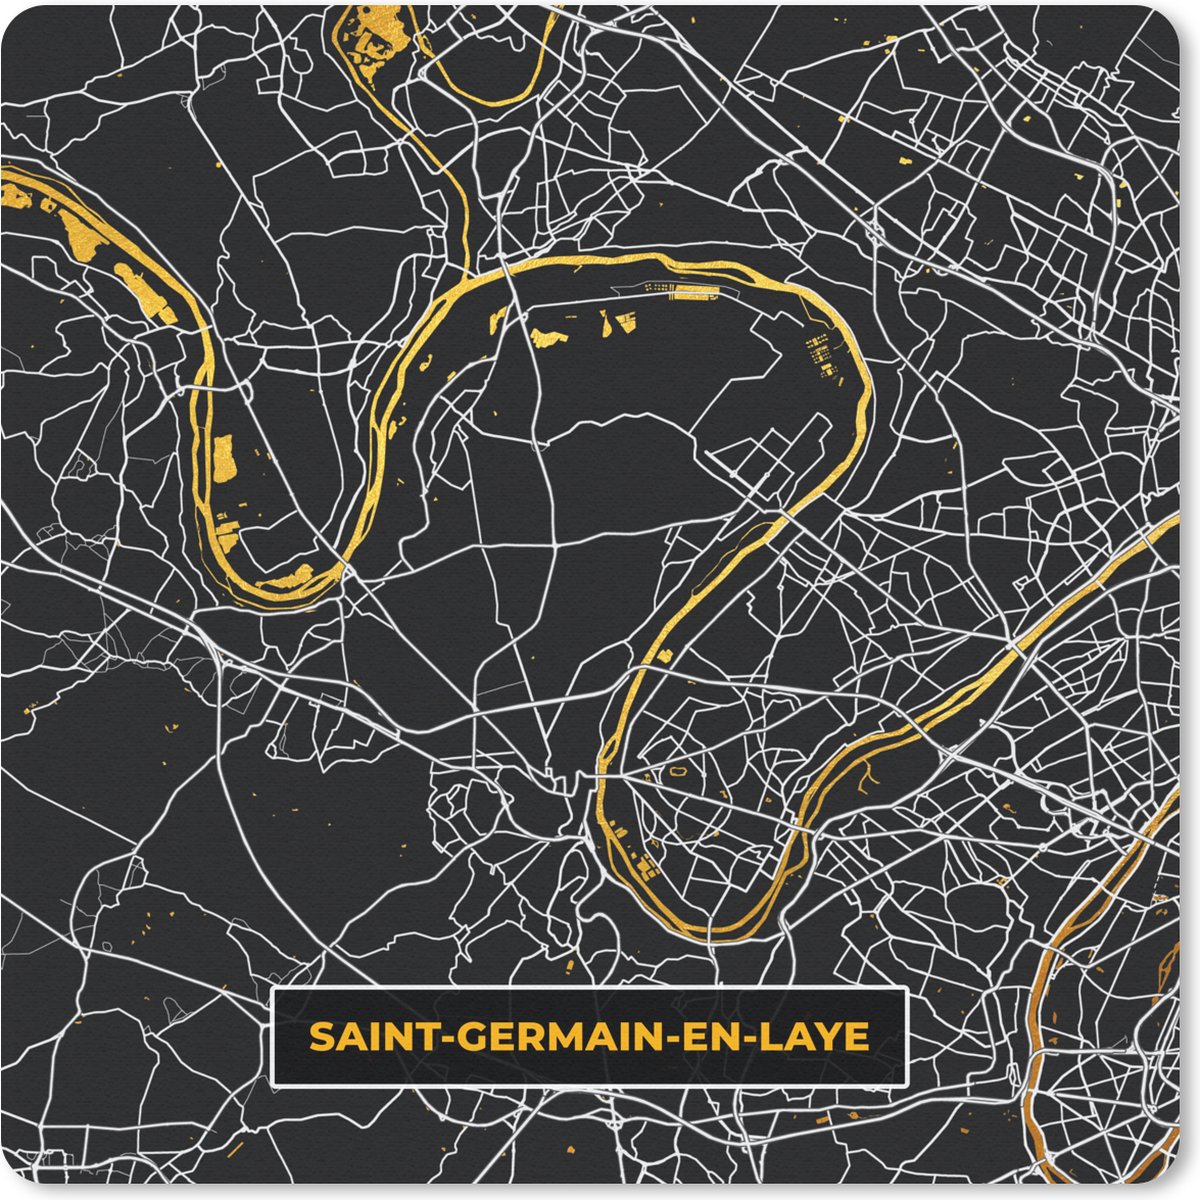 Muismat - Mousepad - Saint-Germain-en-Laye - Plattegrond - Frankrijk - Kaart - Stadskaart - 30x30 cm - Muismatten